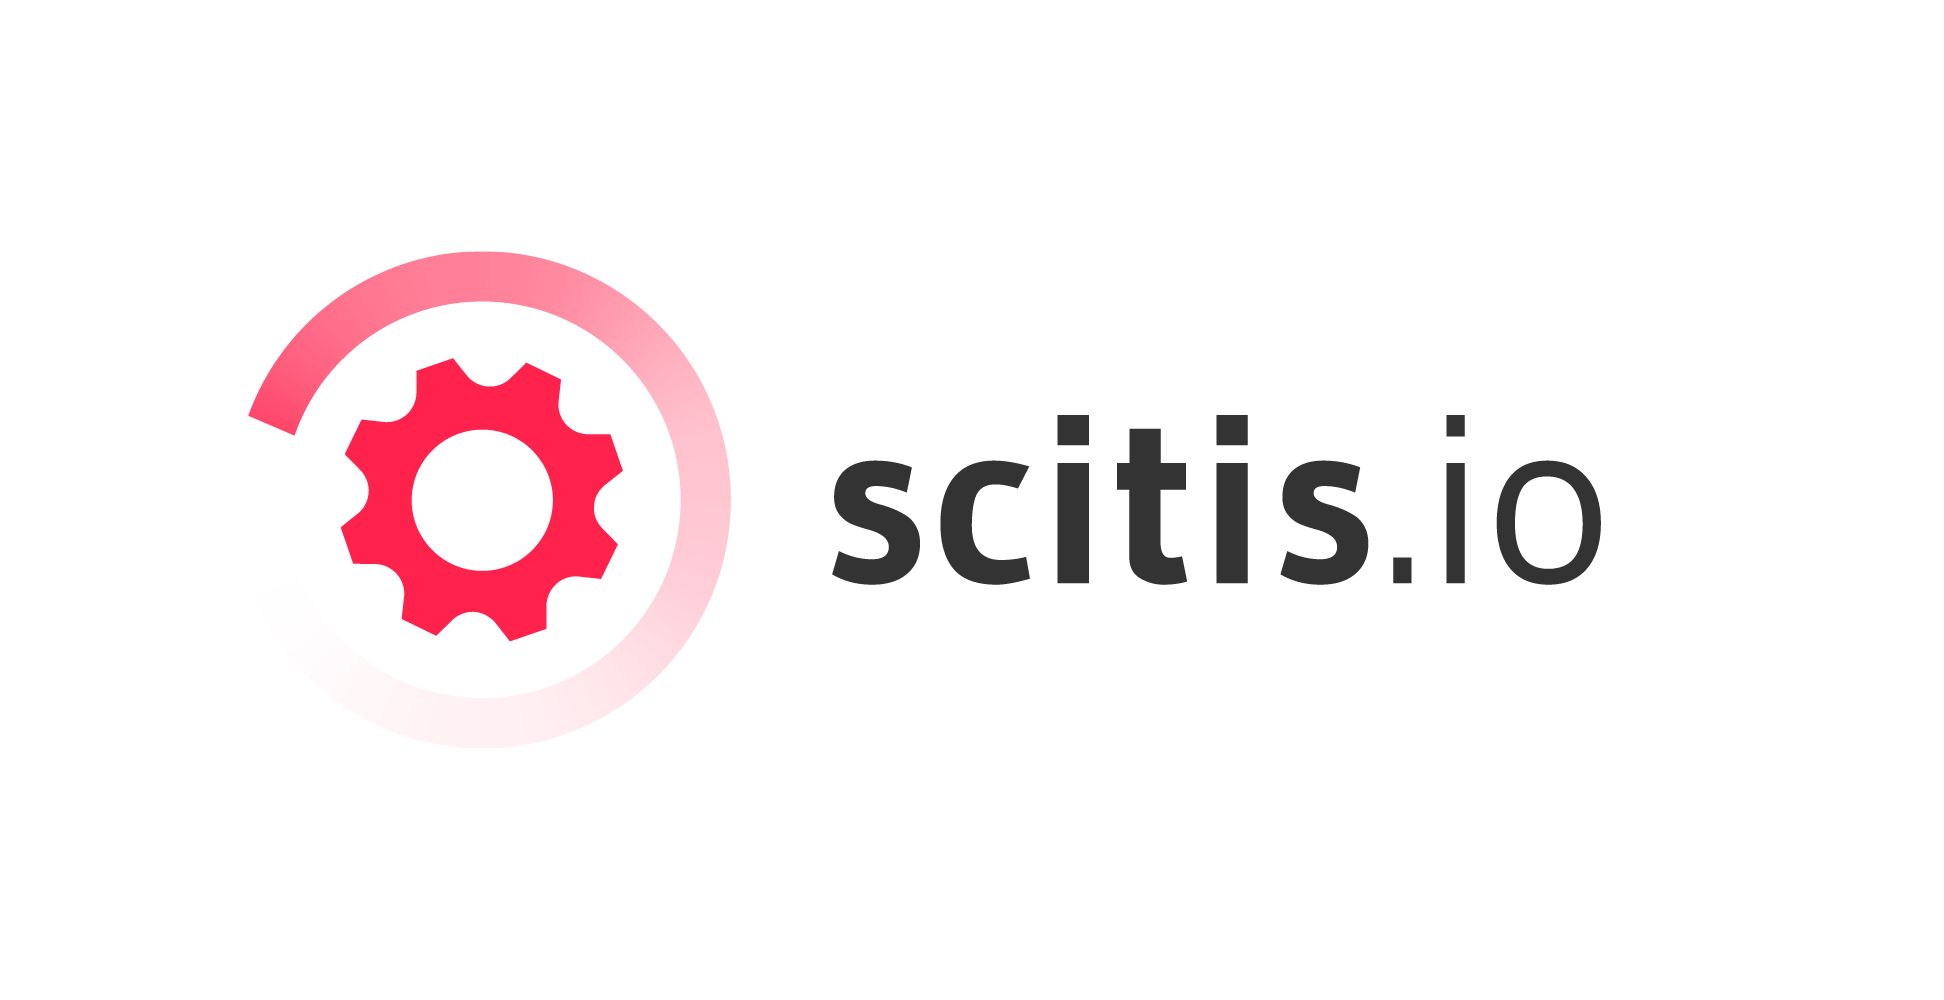 scitis.io GmbH